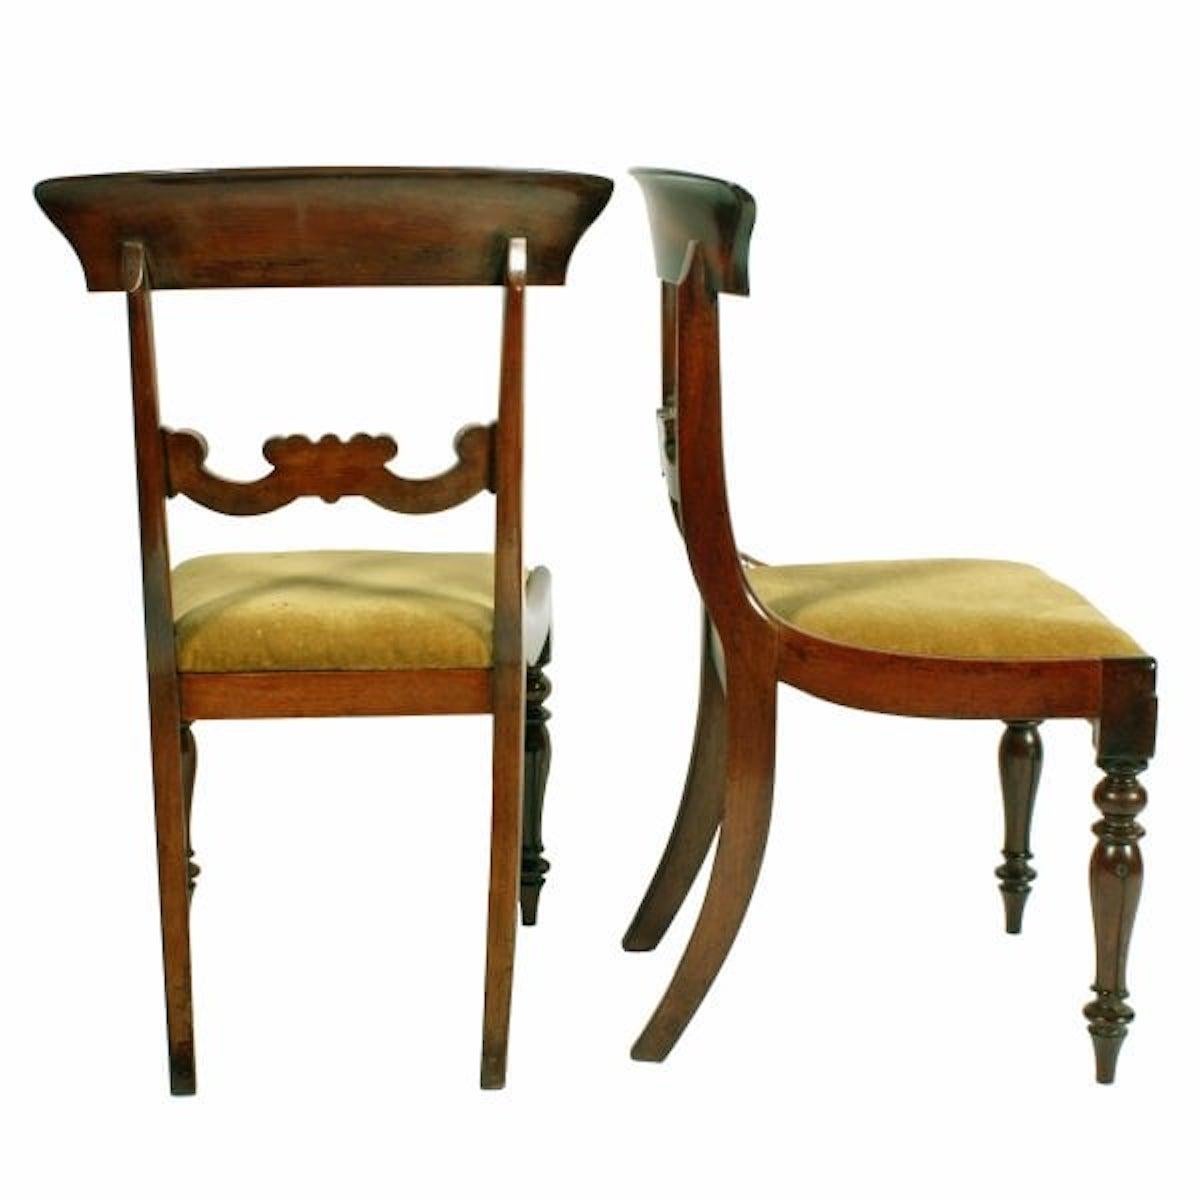 Satz von sechs Mahagoni-Stühlen

Ein Satz von sechs viktorianischen Mahagoni-Esszimmerstühlen aus der Mitte des 19.

Die Stühle haben eine breite, geschwungene Rückenlehne mit einer geschnitzten Mittelschiene.

Die Vorderbeine sind gedrechselt